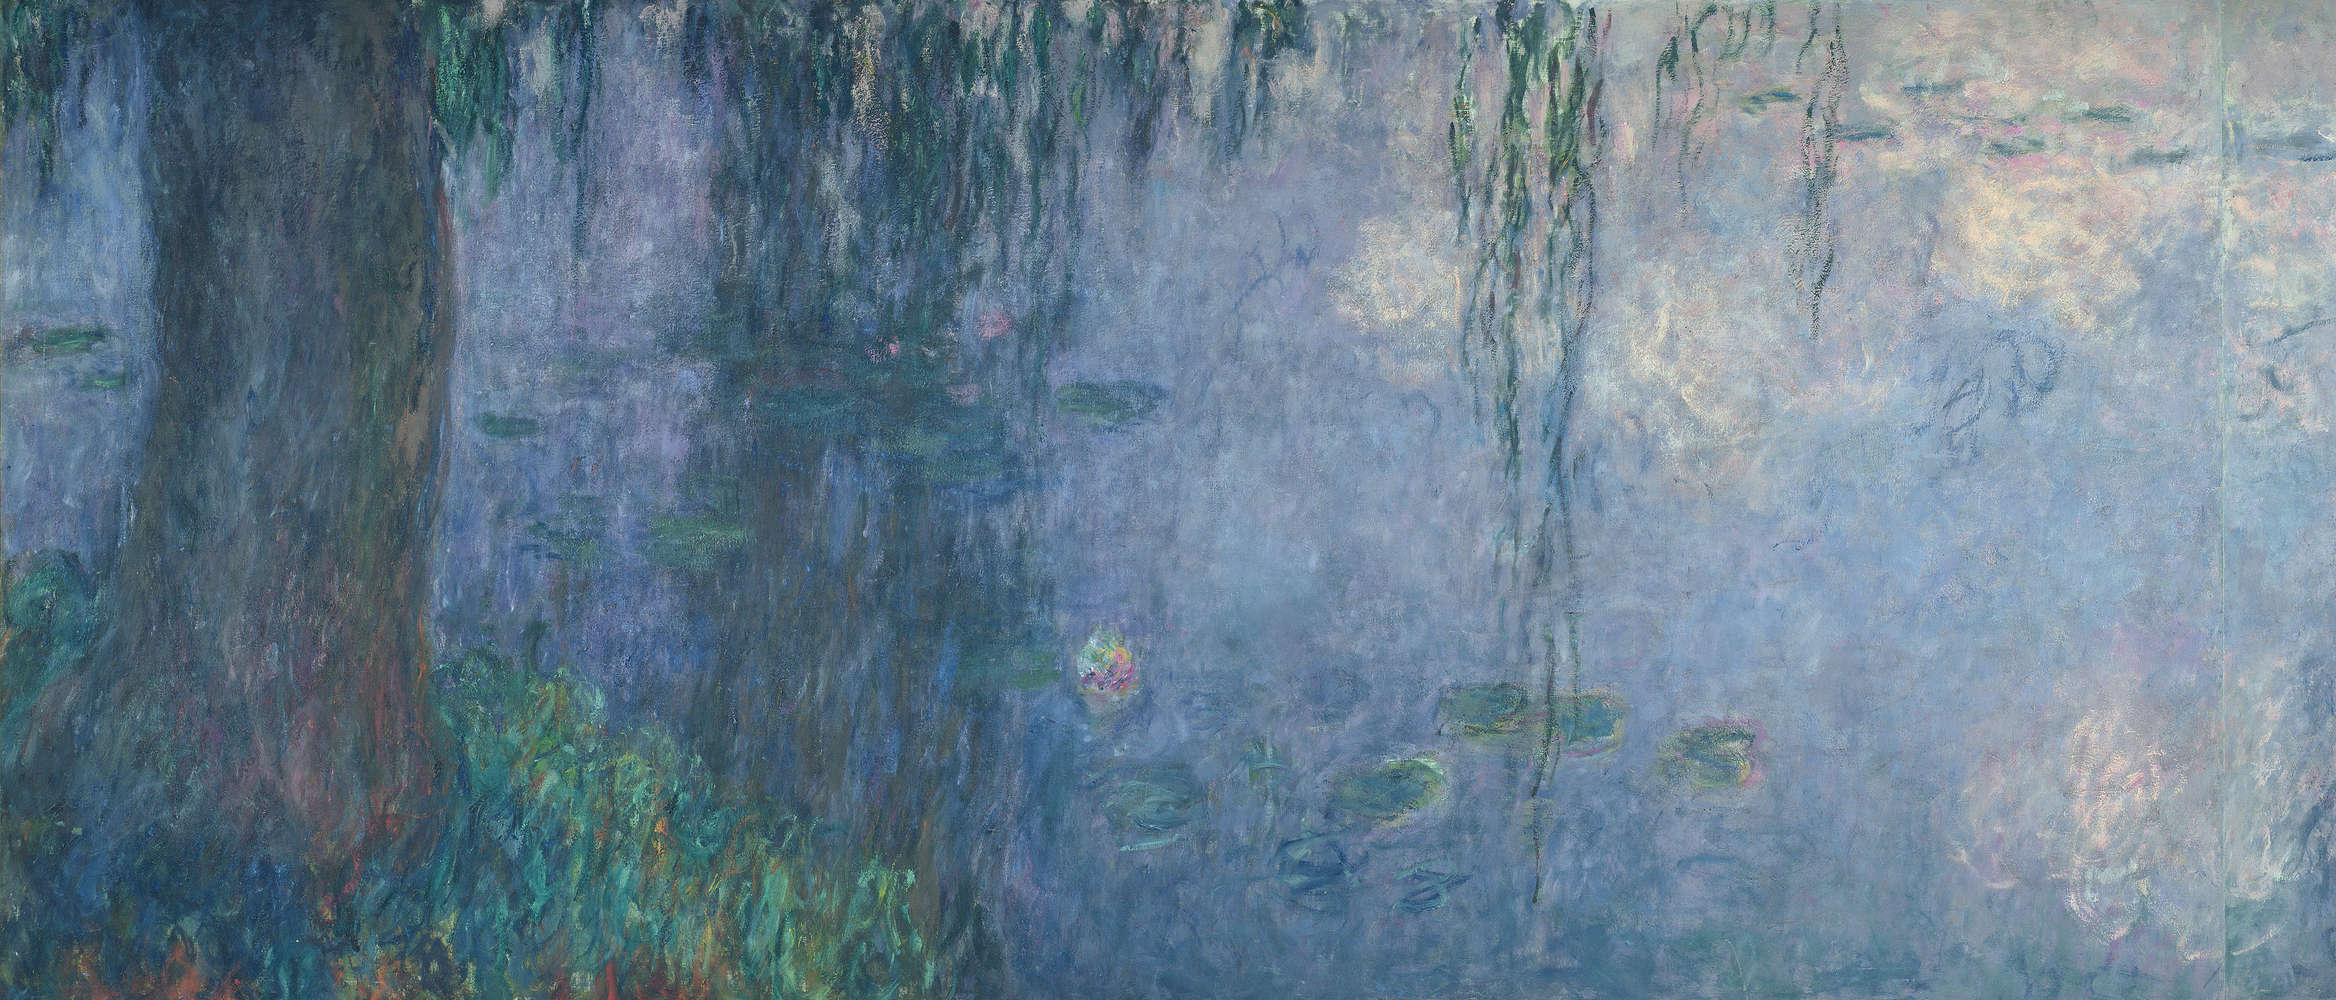             Muurschildering "Waterlelies: ochtend met treurwilgen" detail van Claude Monet
        